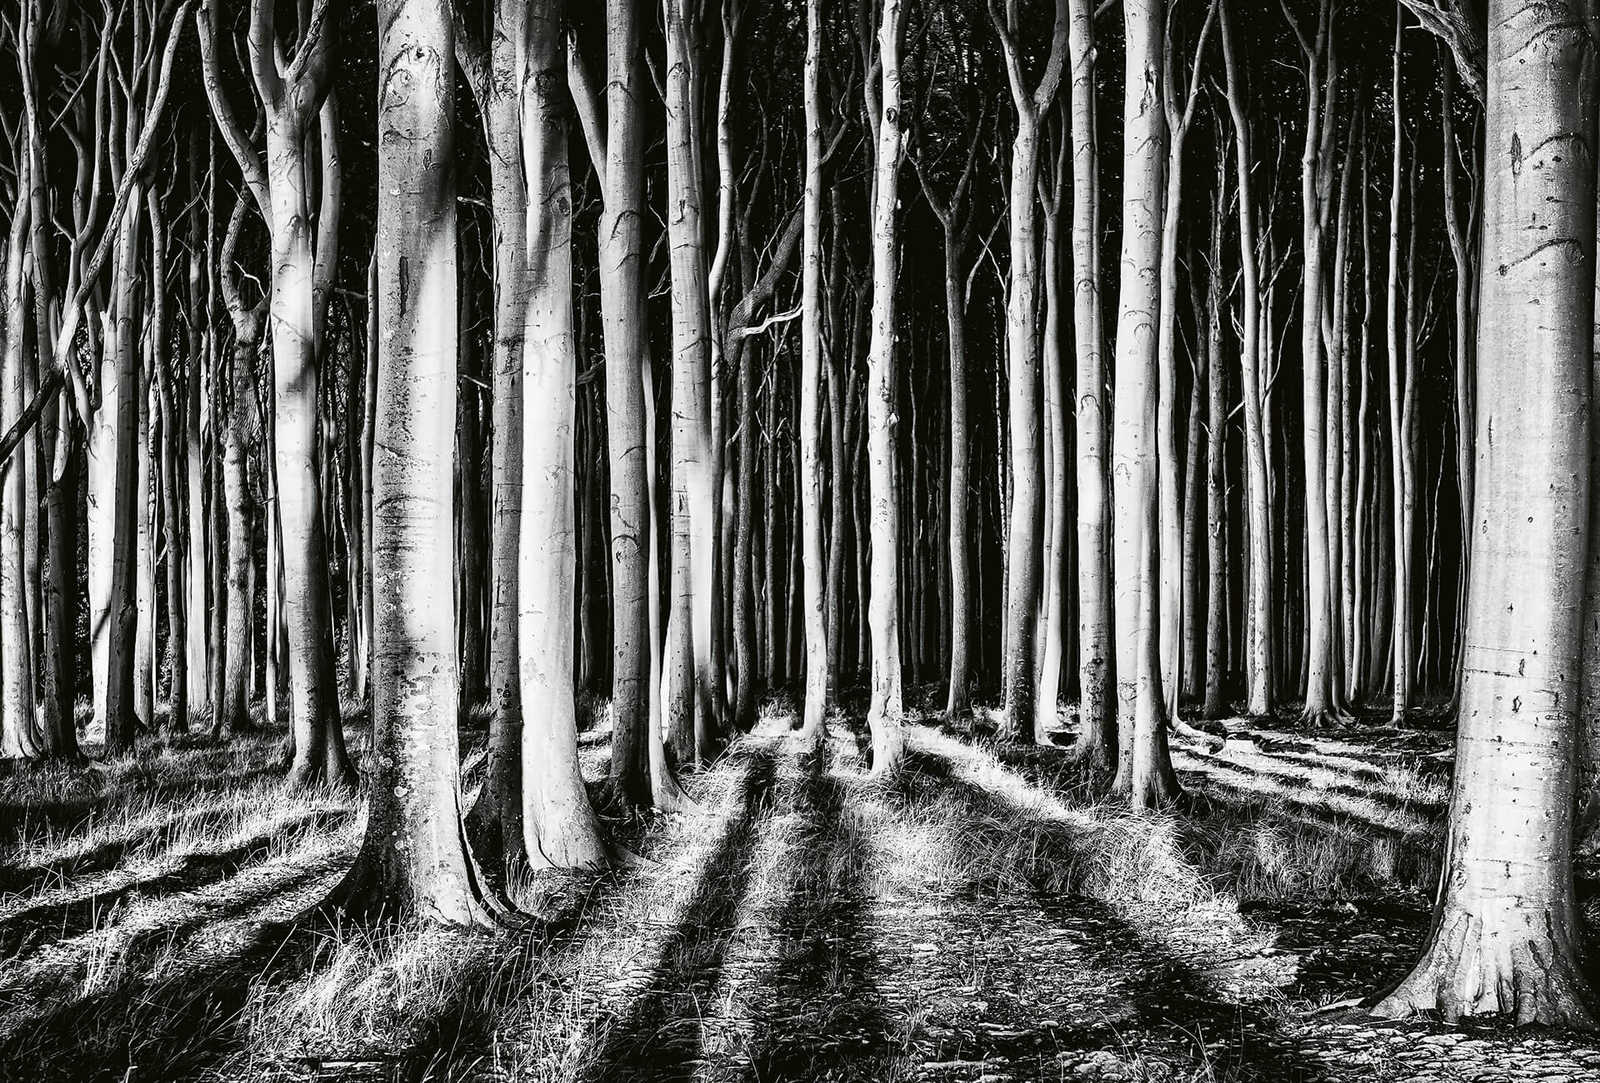             Fototapete Natur Geisterwald – Schwarz, Weiß, Grau
        